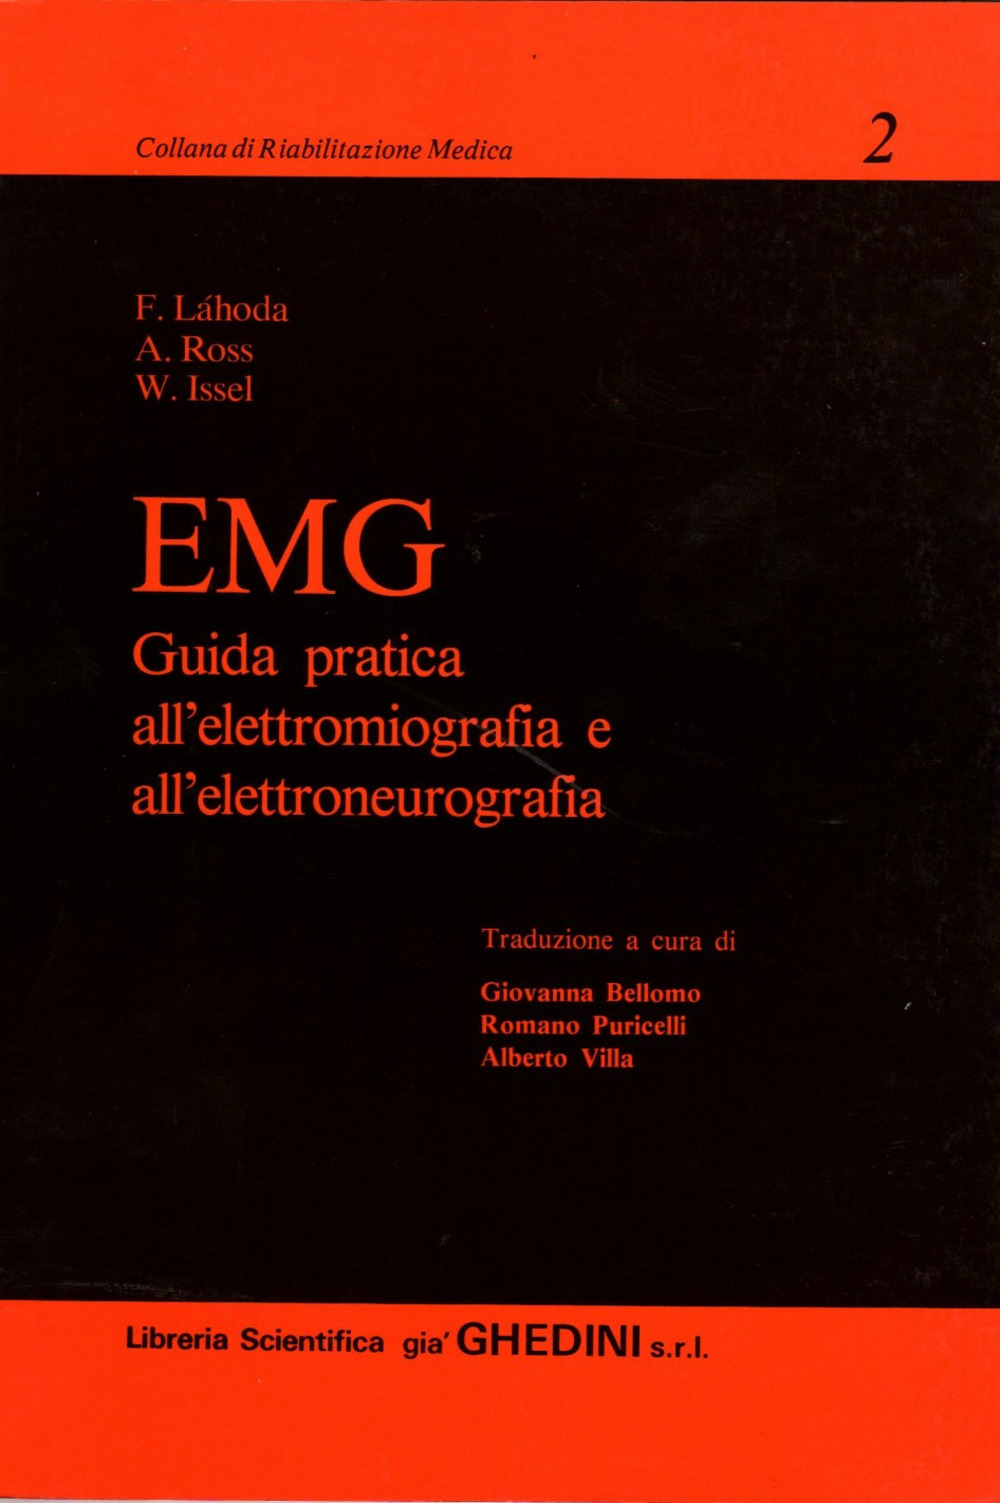 EMG. Guida pratica all'elettromiografia e all'elettroneurografia